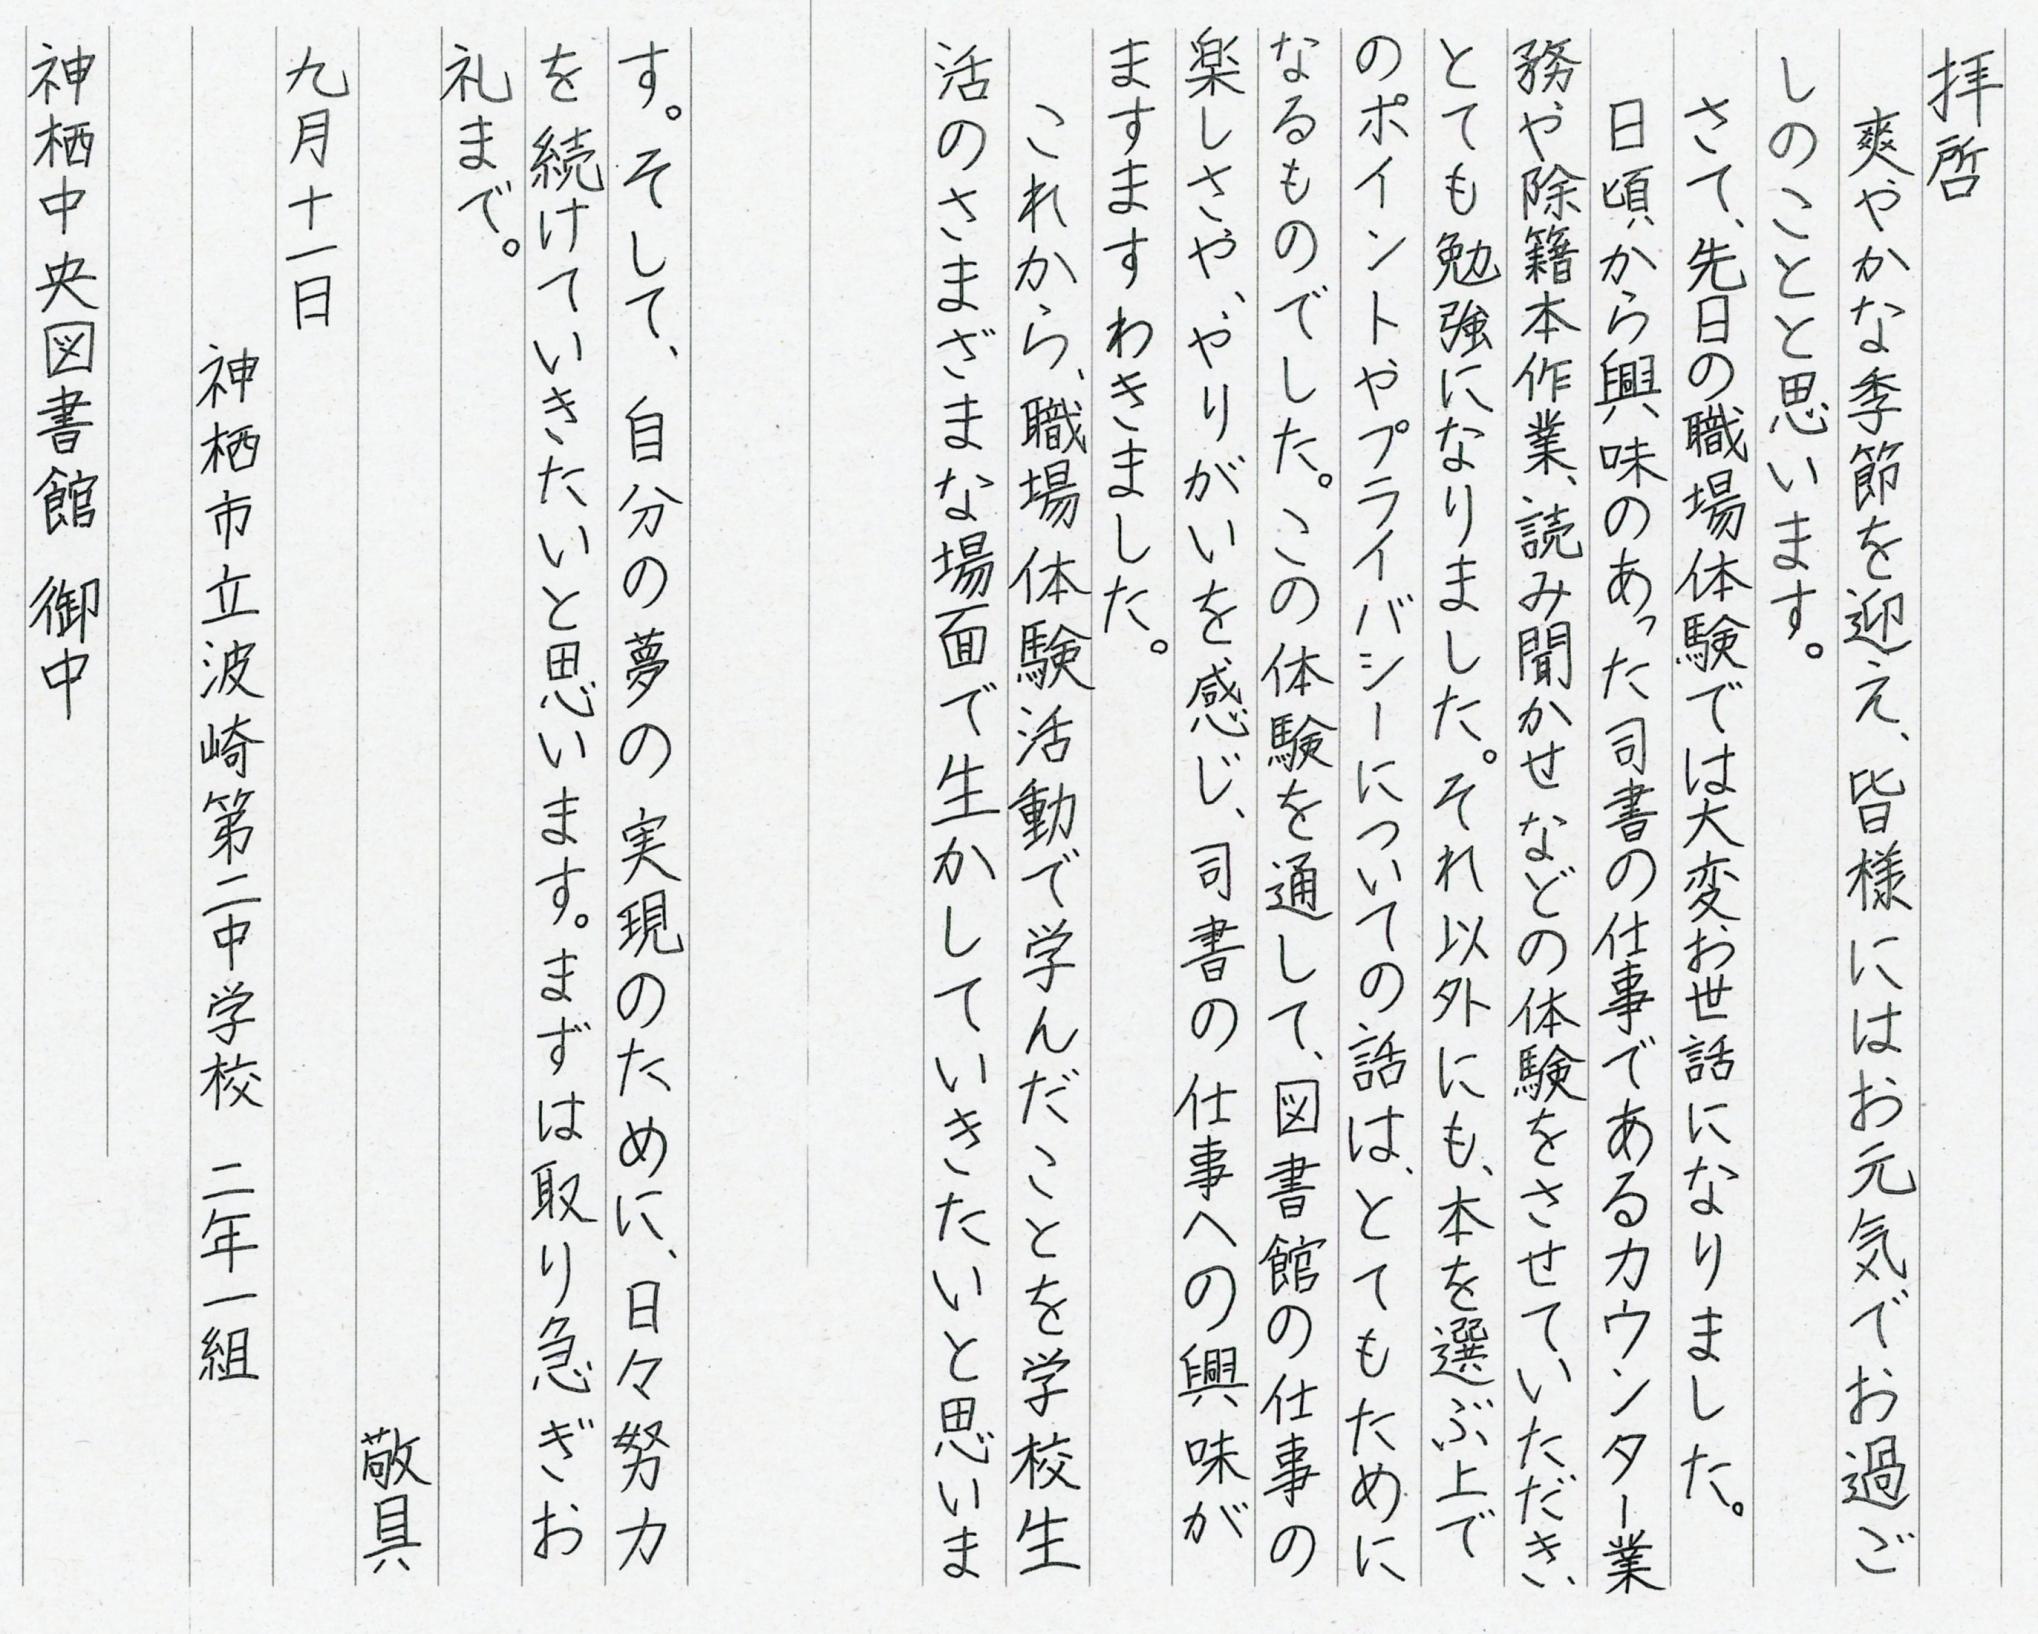 波崎二中学校生徒からのお手紙の写真